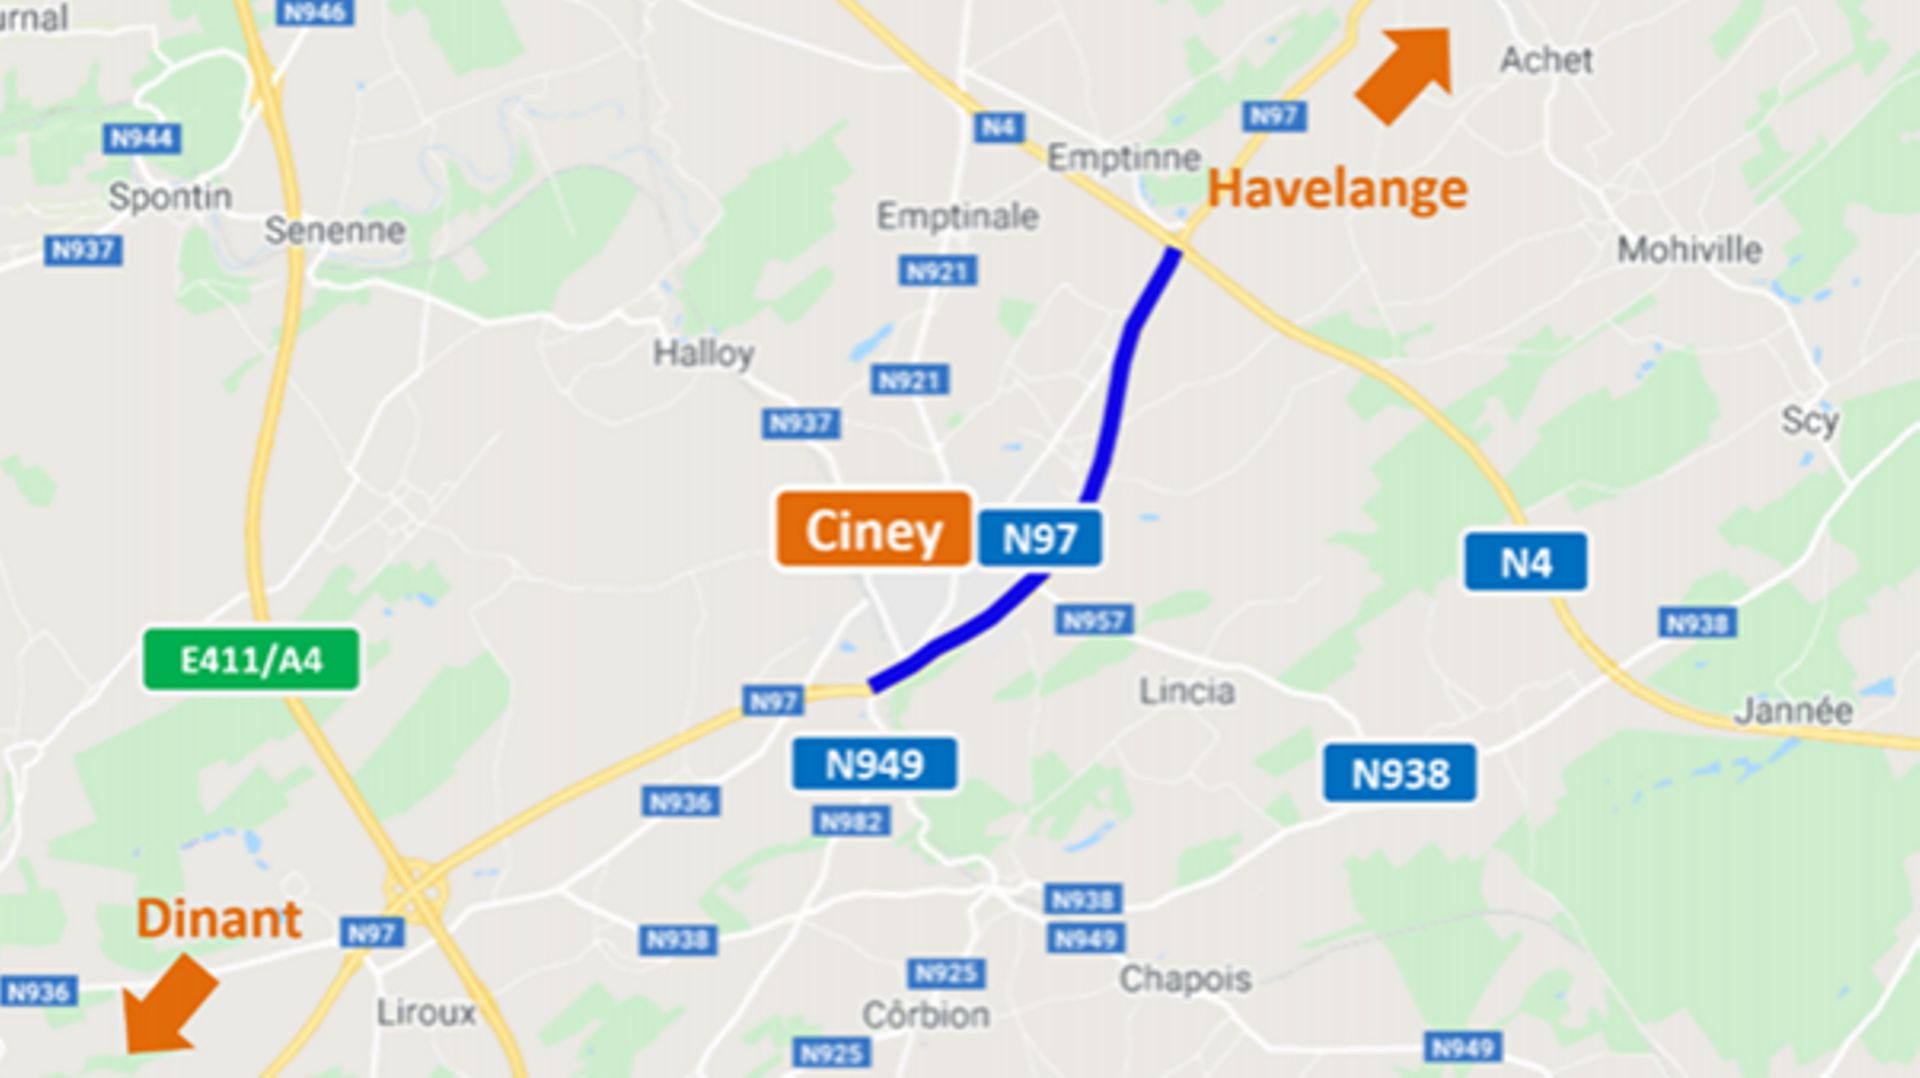 Travaux prévus en septembre sur la N67 à Ciney et la N63 entre Marche-en-Famenne et Baillonville